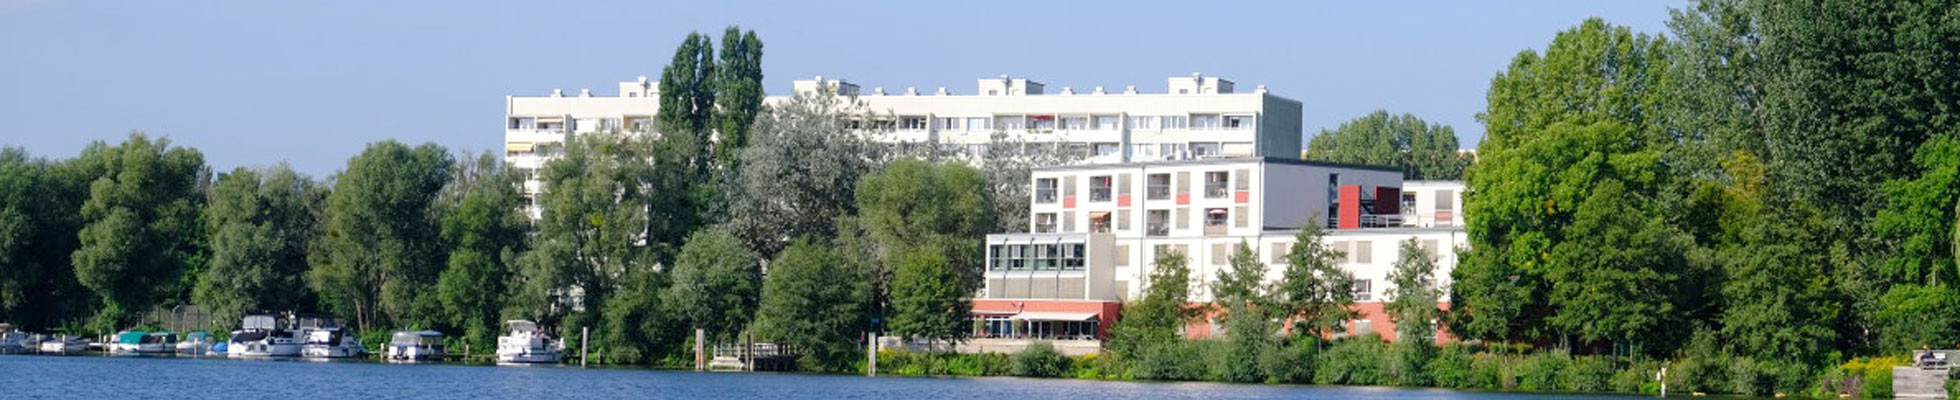 Panoramablick ProCurand Seniorenresidenz Havelpalais an der Neustädter Bucht